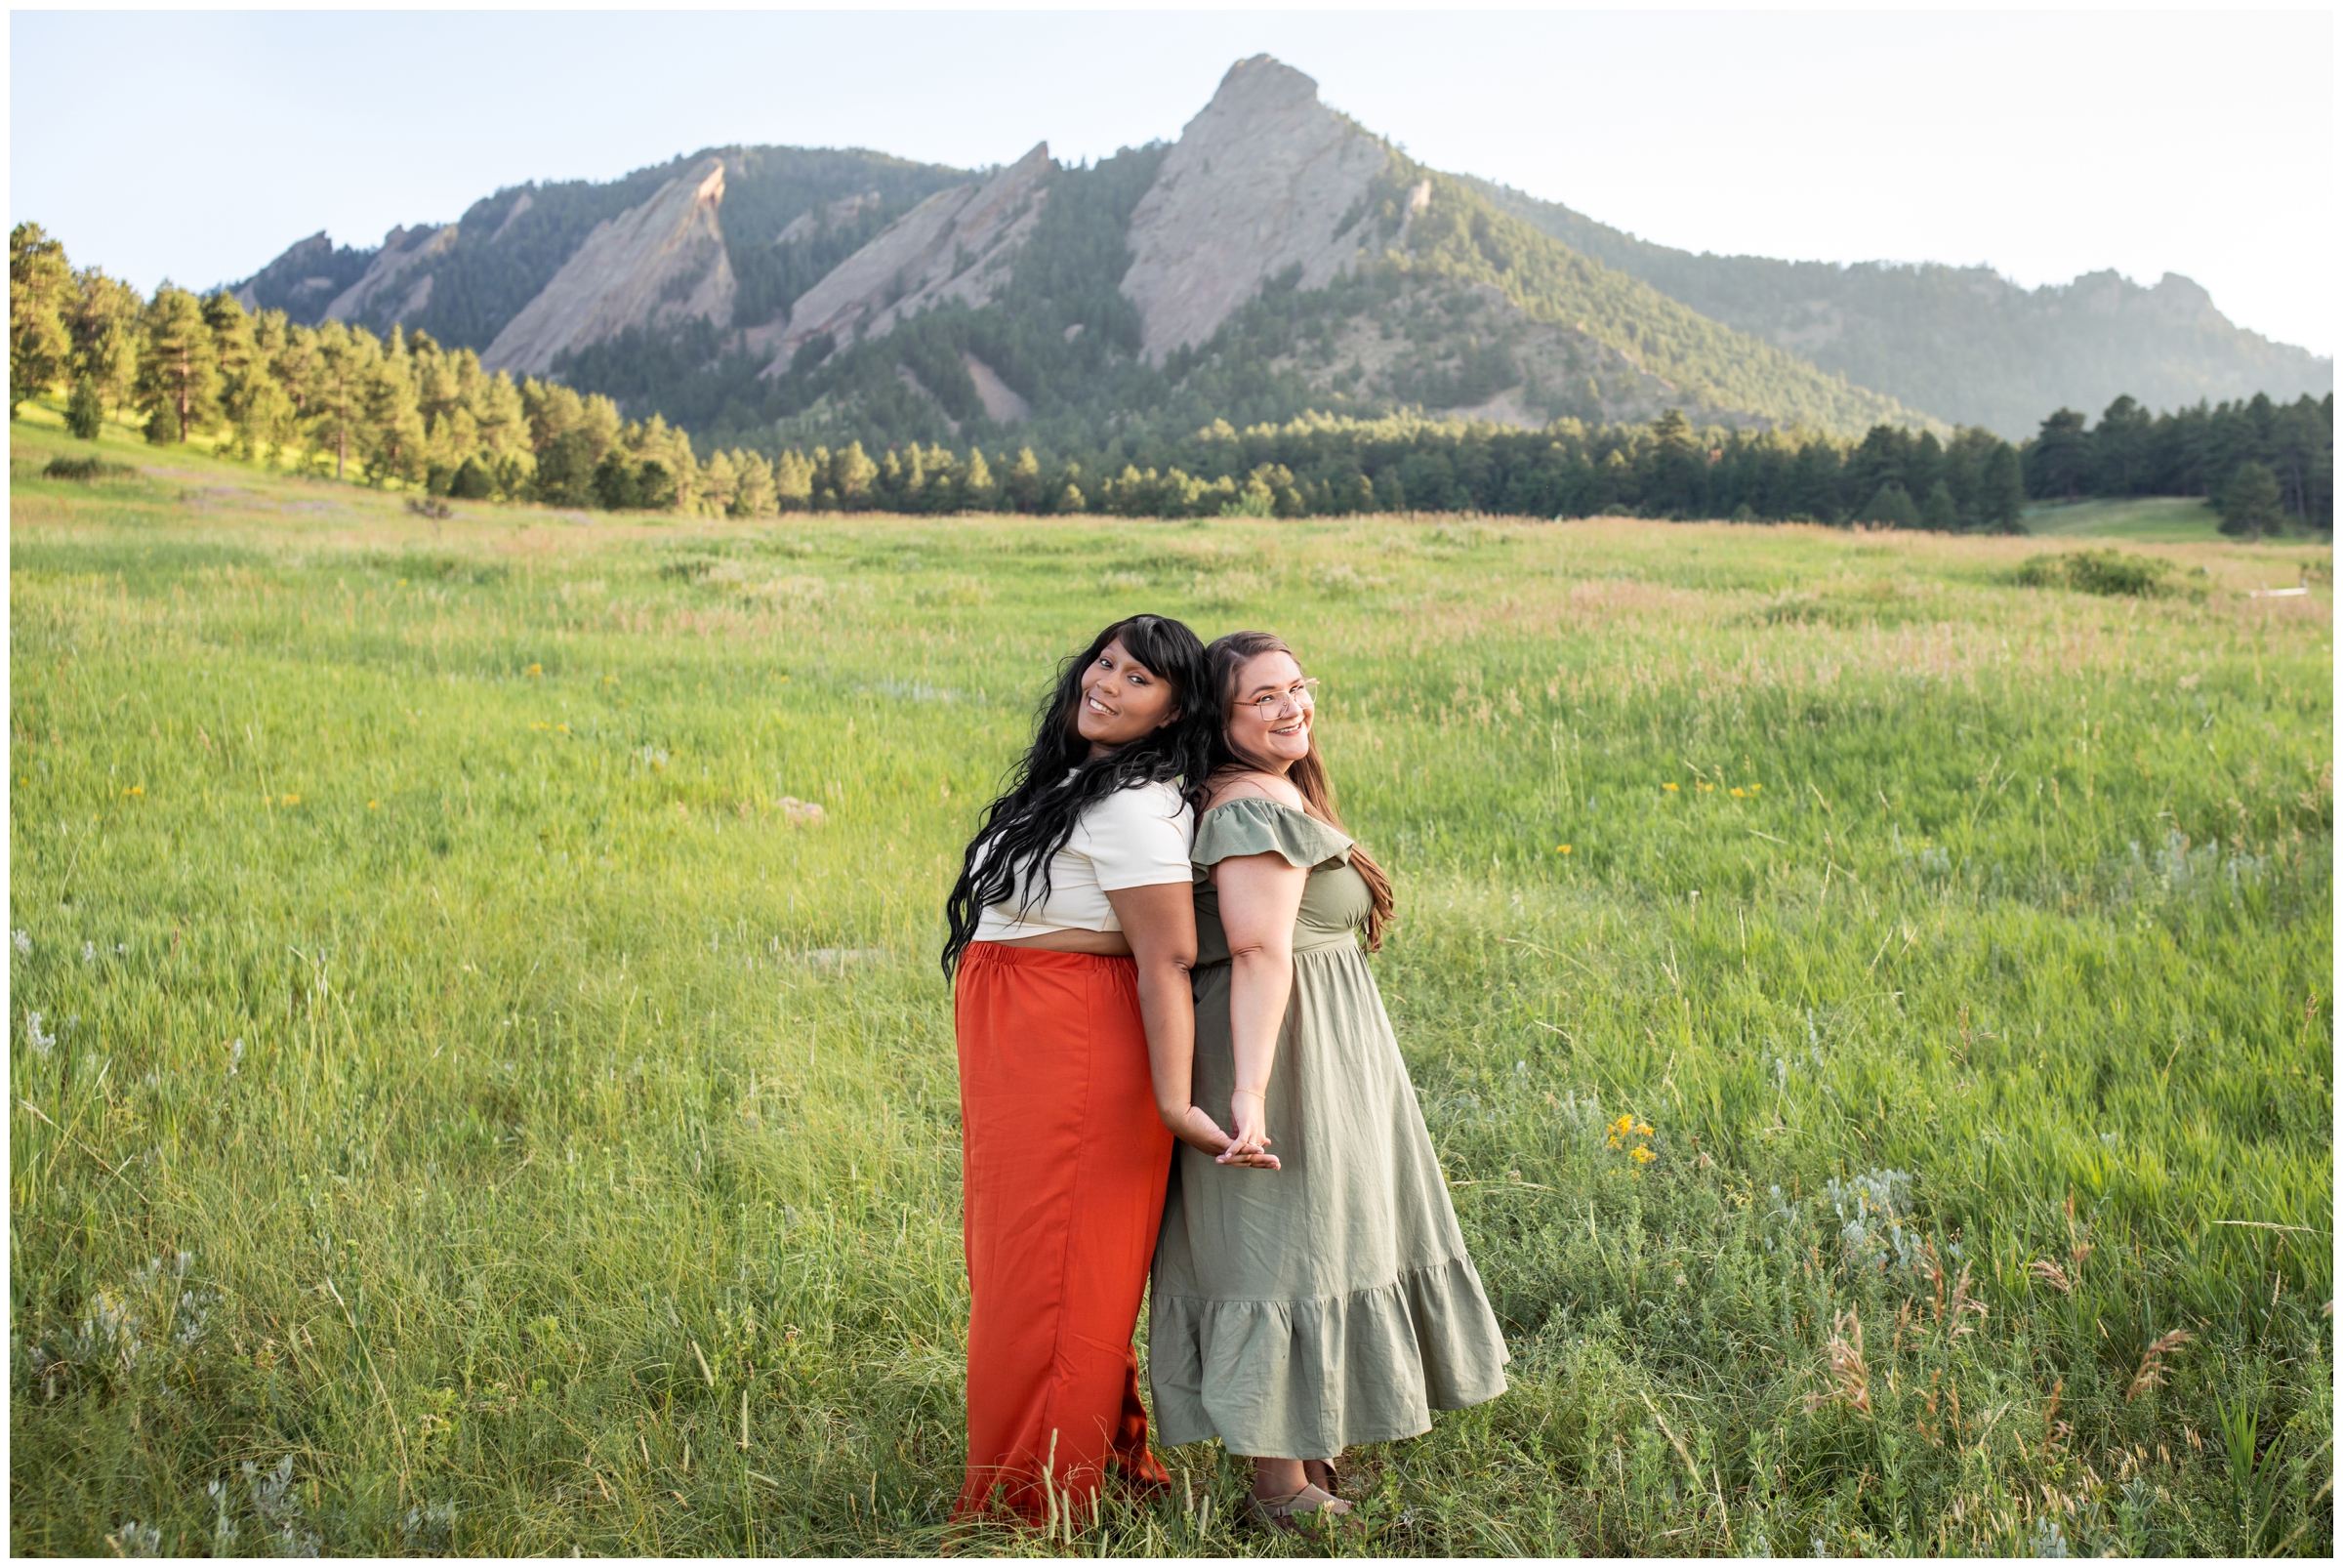 Boulder best friends portraits at Chautauqua Park by Colorado photographer Plum Pretty Photography